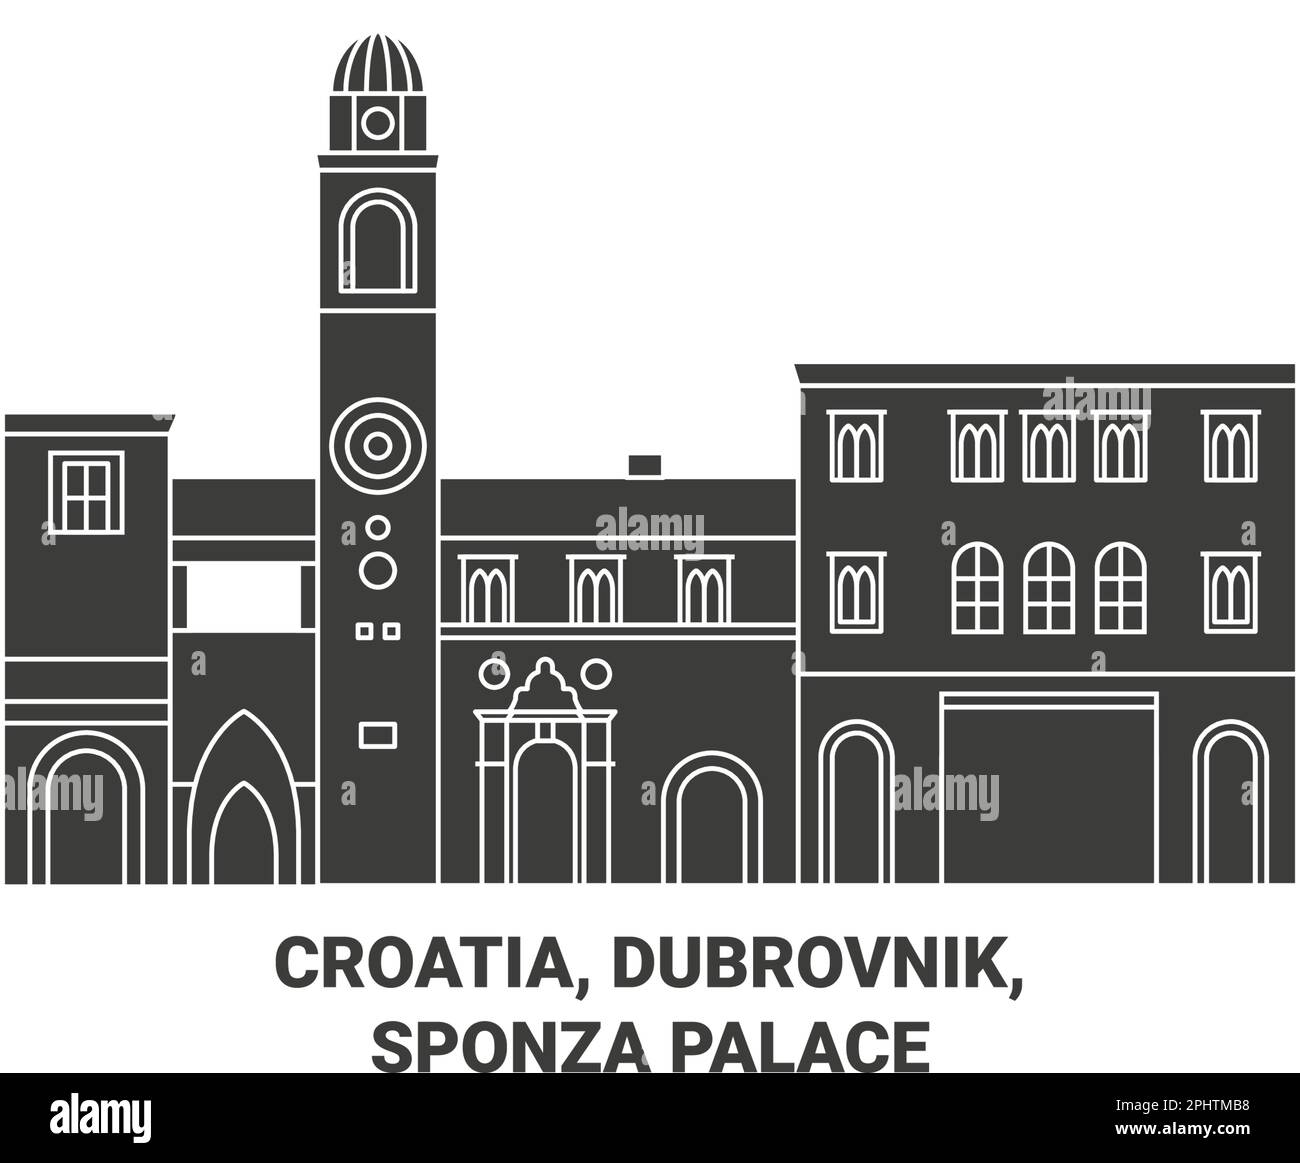 Kroatien, Dubrovnik, Sponza Palast Reise Wahrzeichen Vektordarstellung Stock Vektor